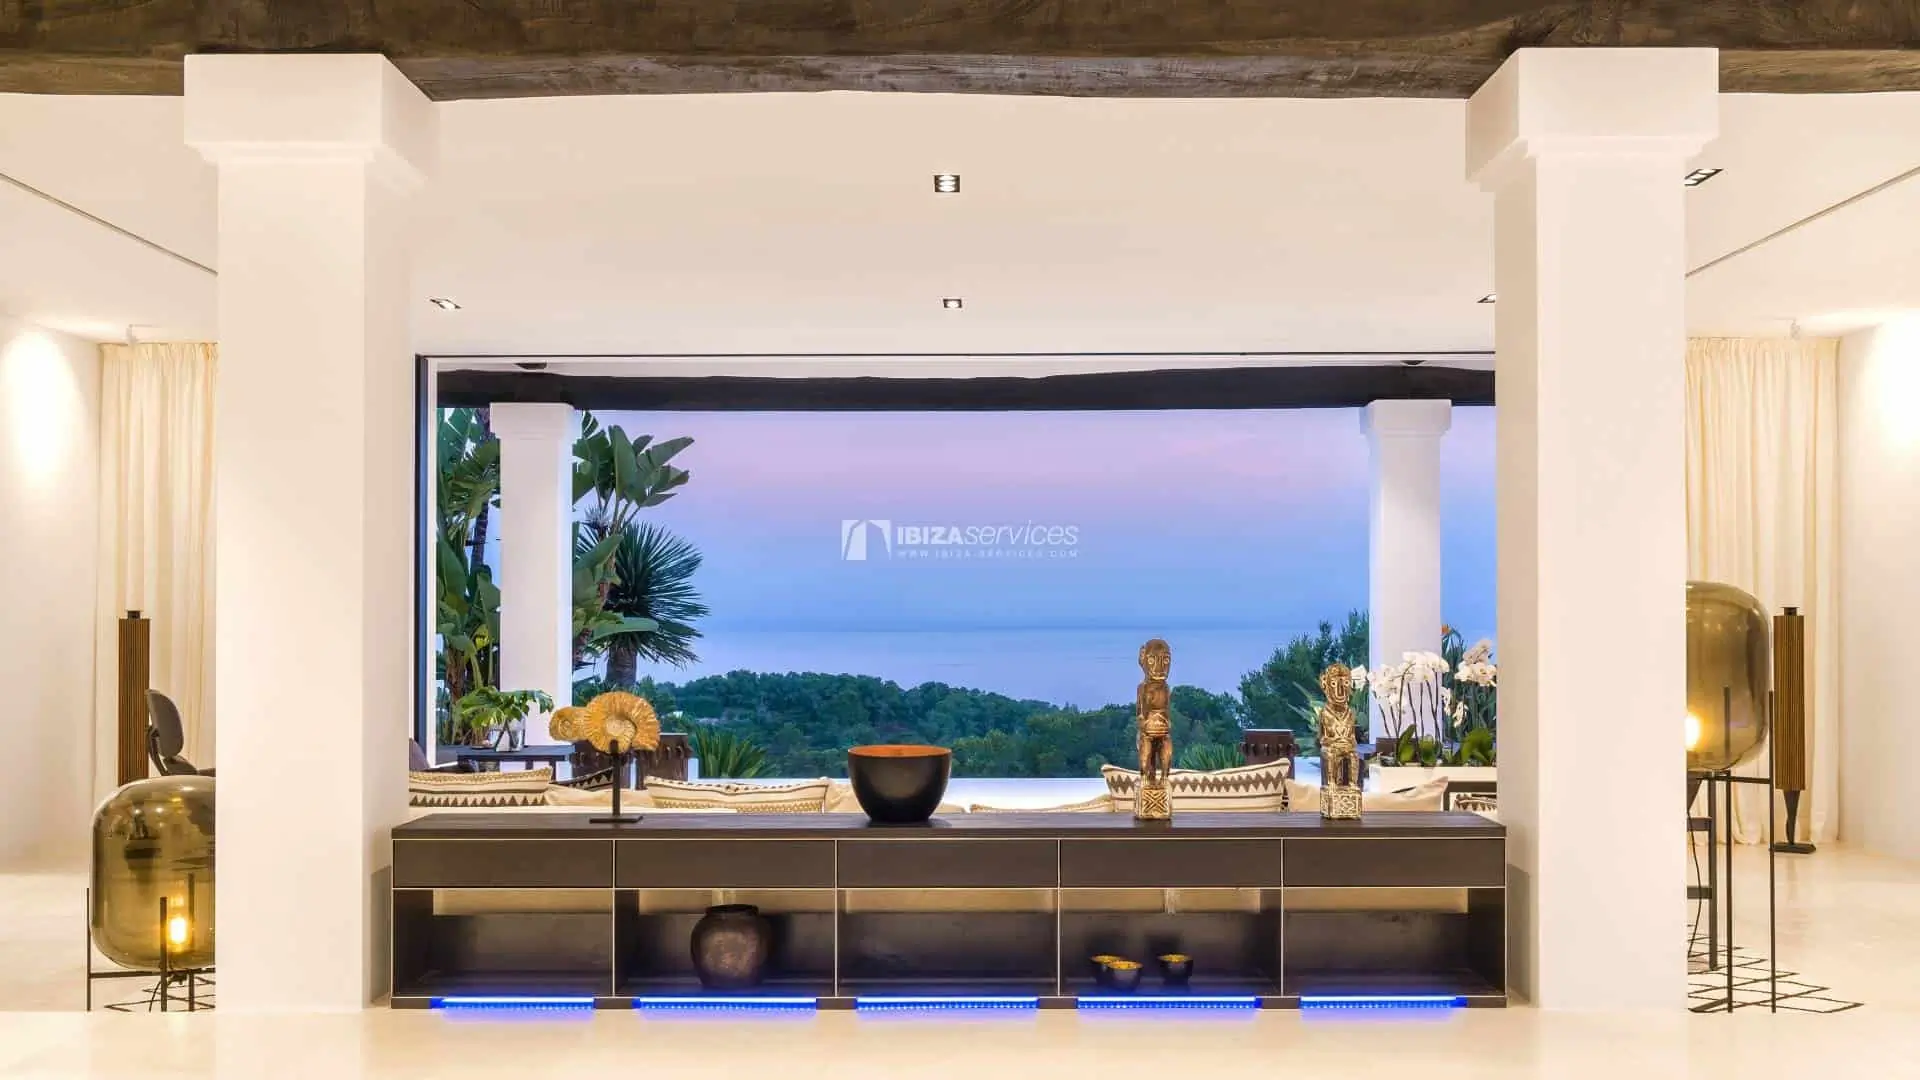 Villa de luxe à louer Talamanca Ibiza